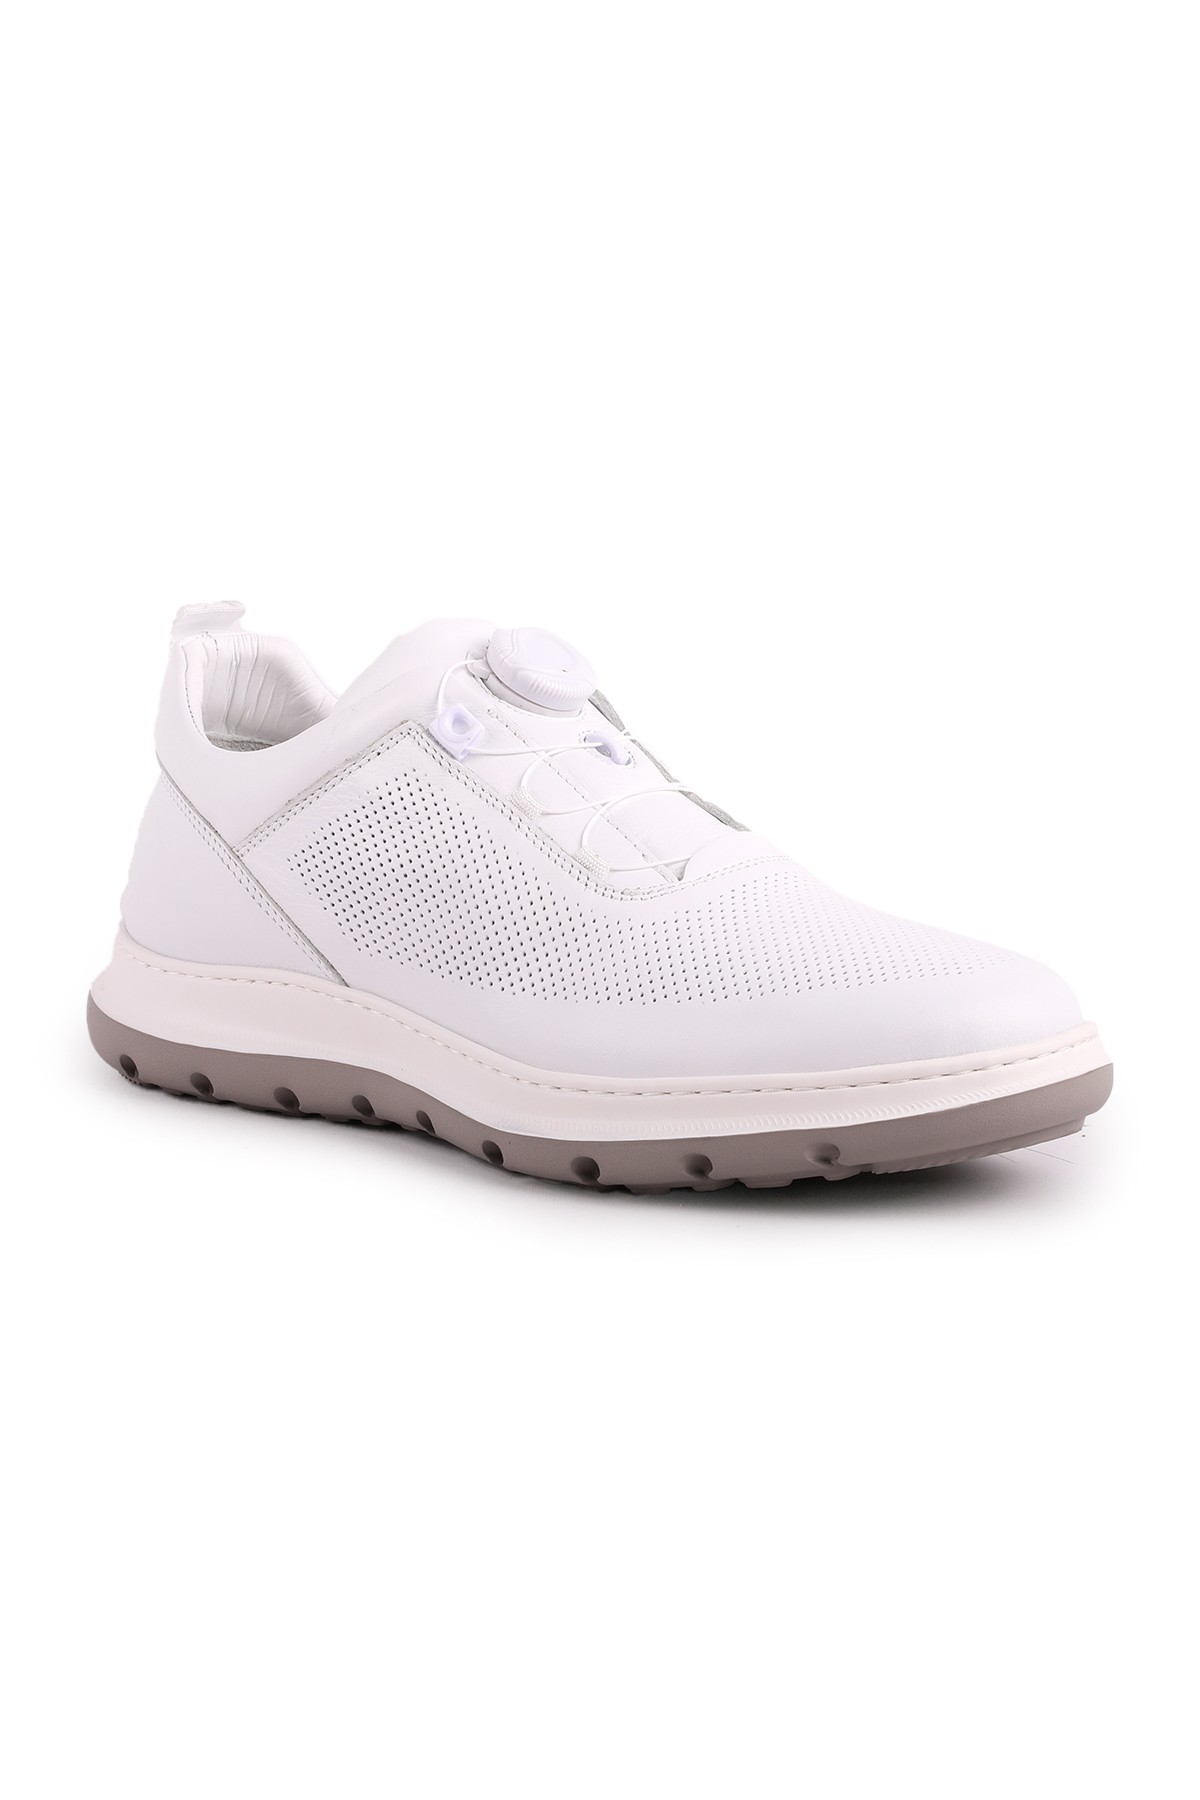 Libero L5228 Erkek Deri Casual Ayakkabı - Beyaz